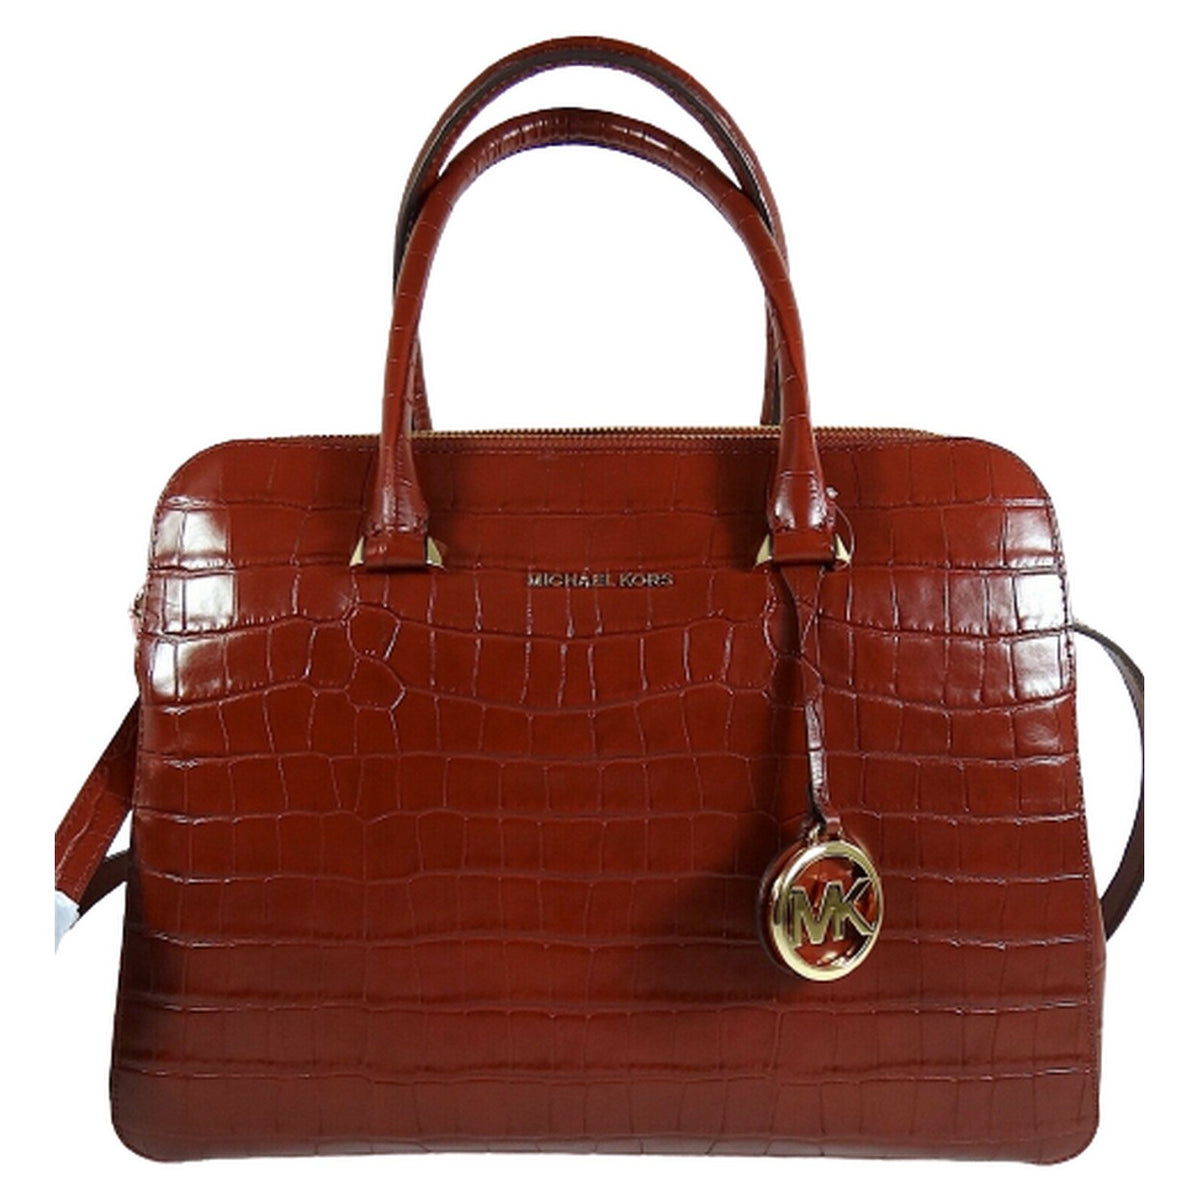 Double Zip Satchel Leather Handbag | Michael Kors.jpg